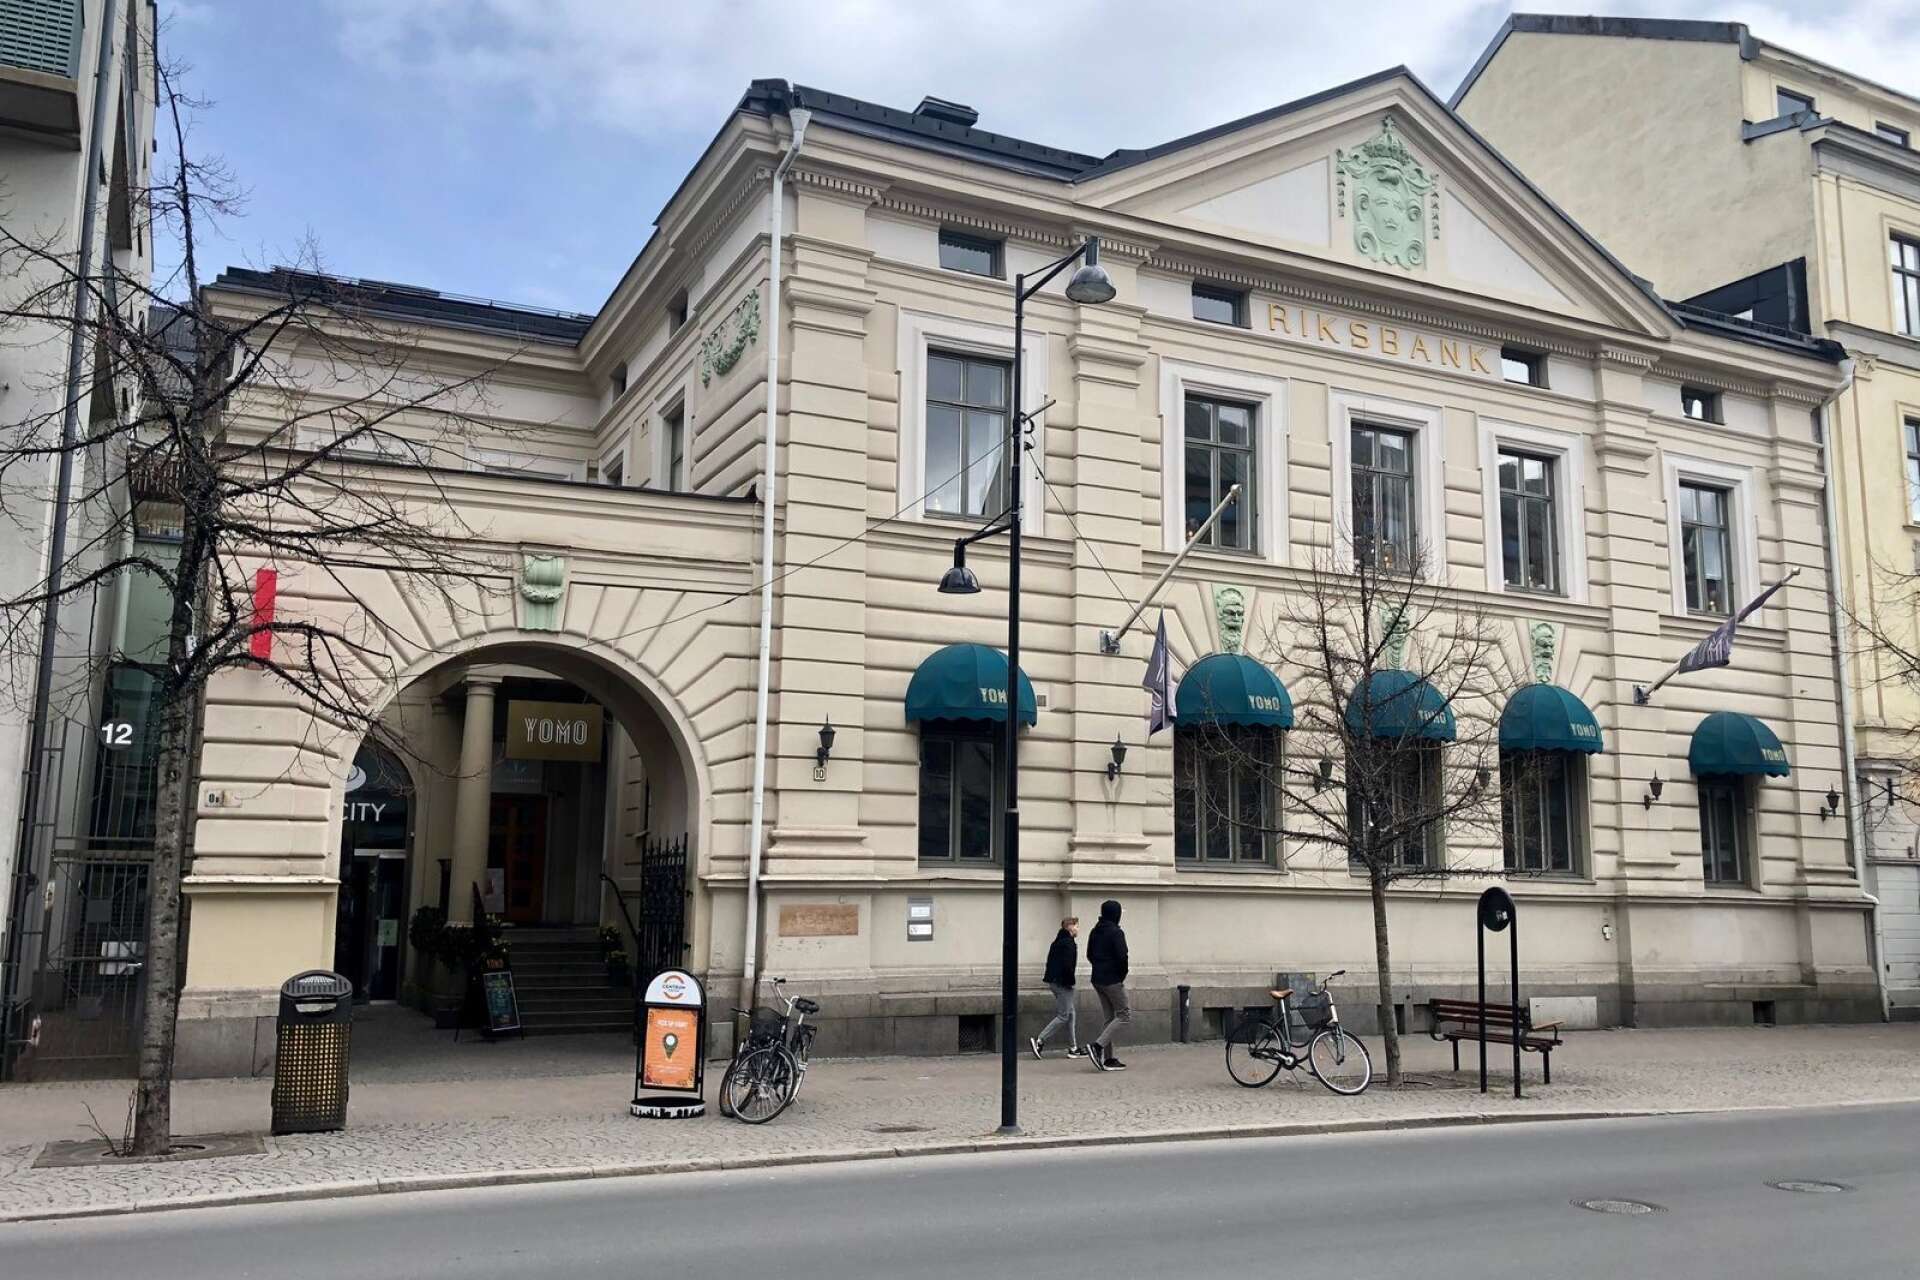 Olav Thon-gruppen som äger Mitticity är även ägare till Riksbankshuset på Järnvägsgatan och ska diskutera en eventuell ljussättning av fasaden.